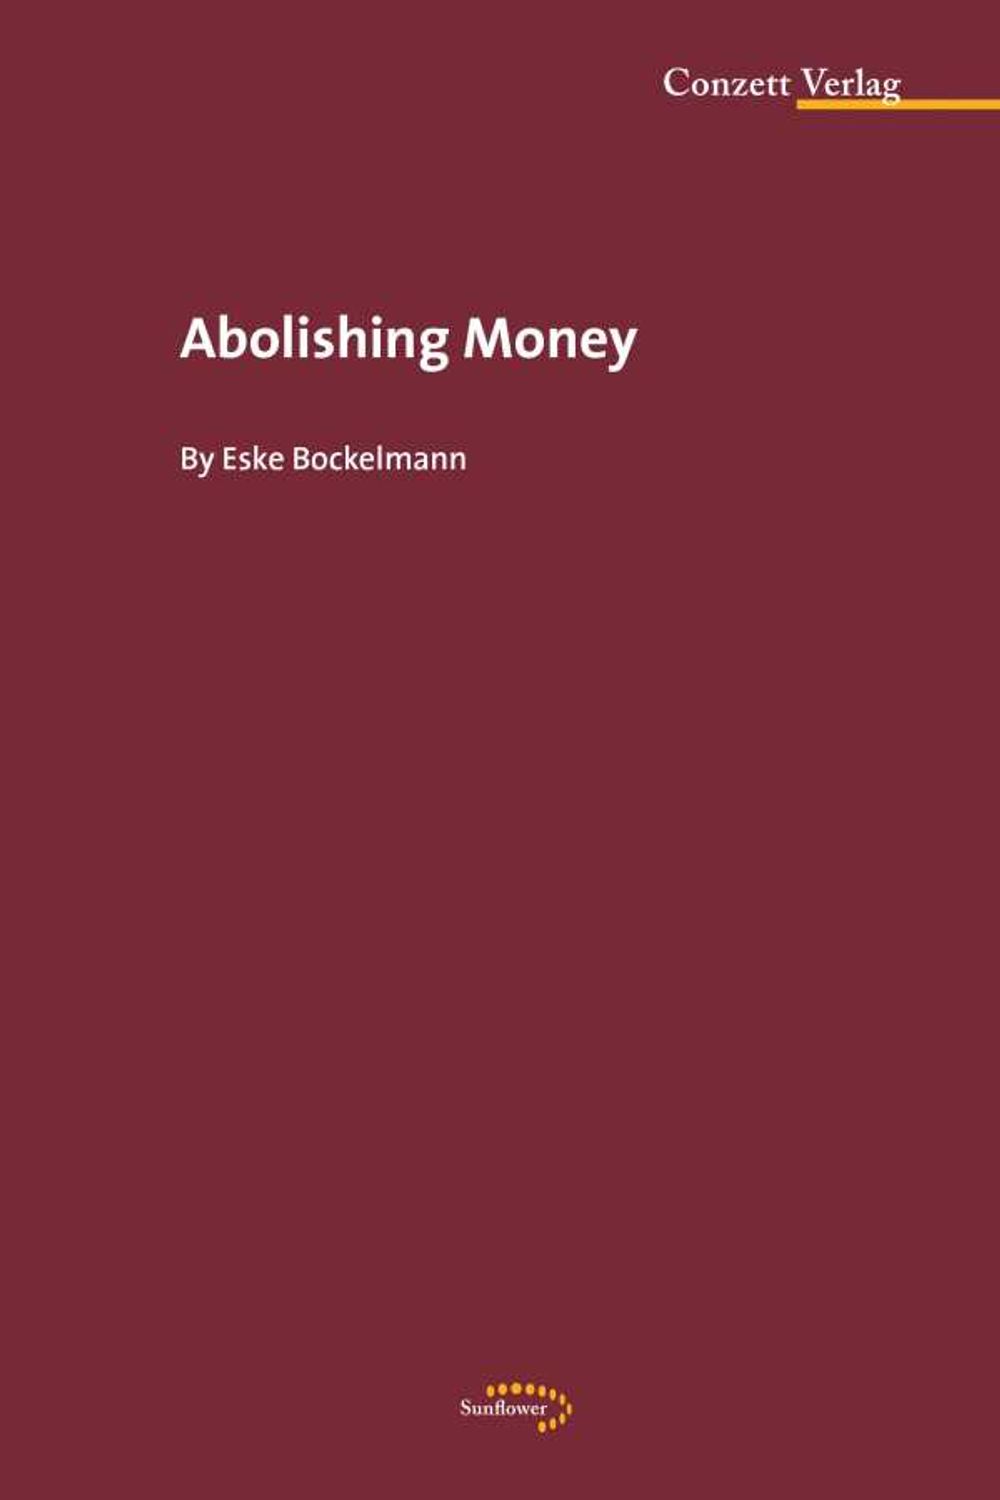 bw-abolishing-money-conzett-verlag-9783037600177